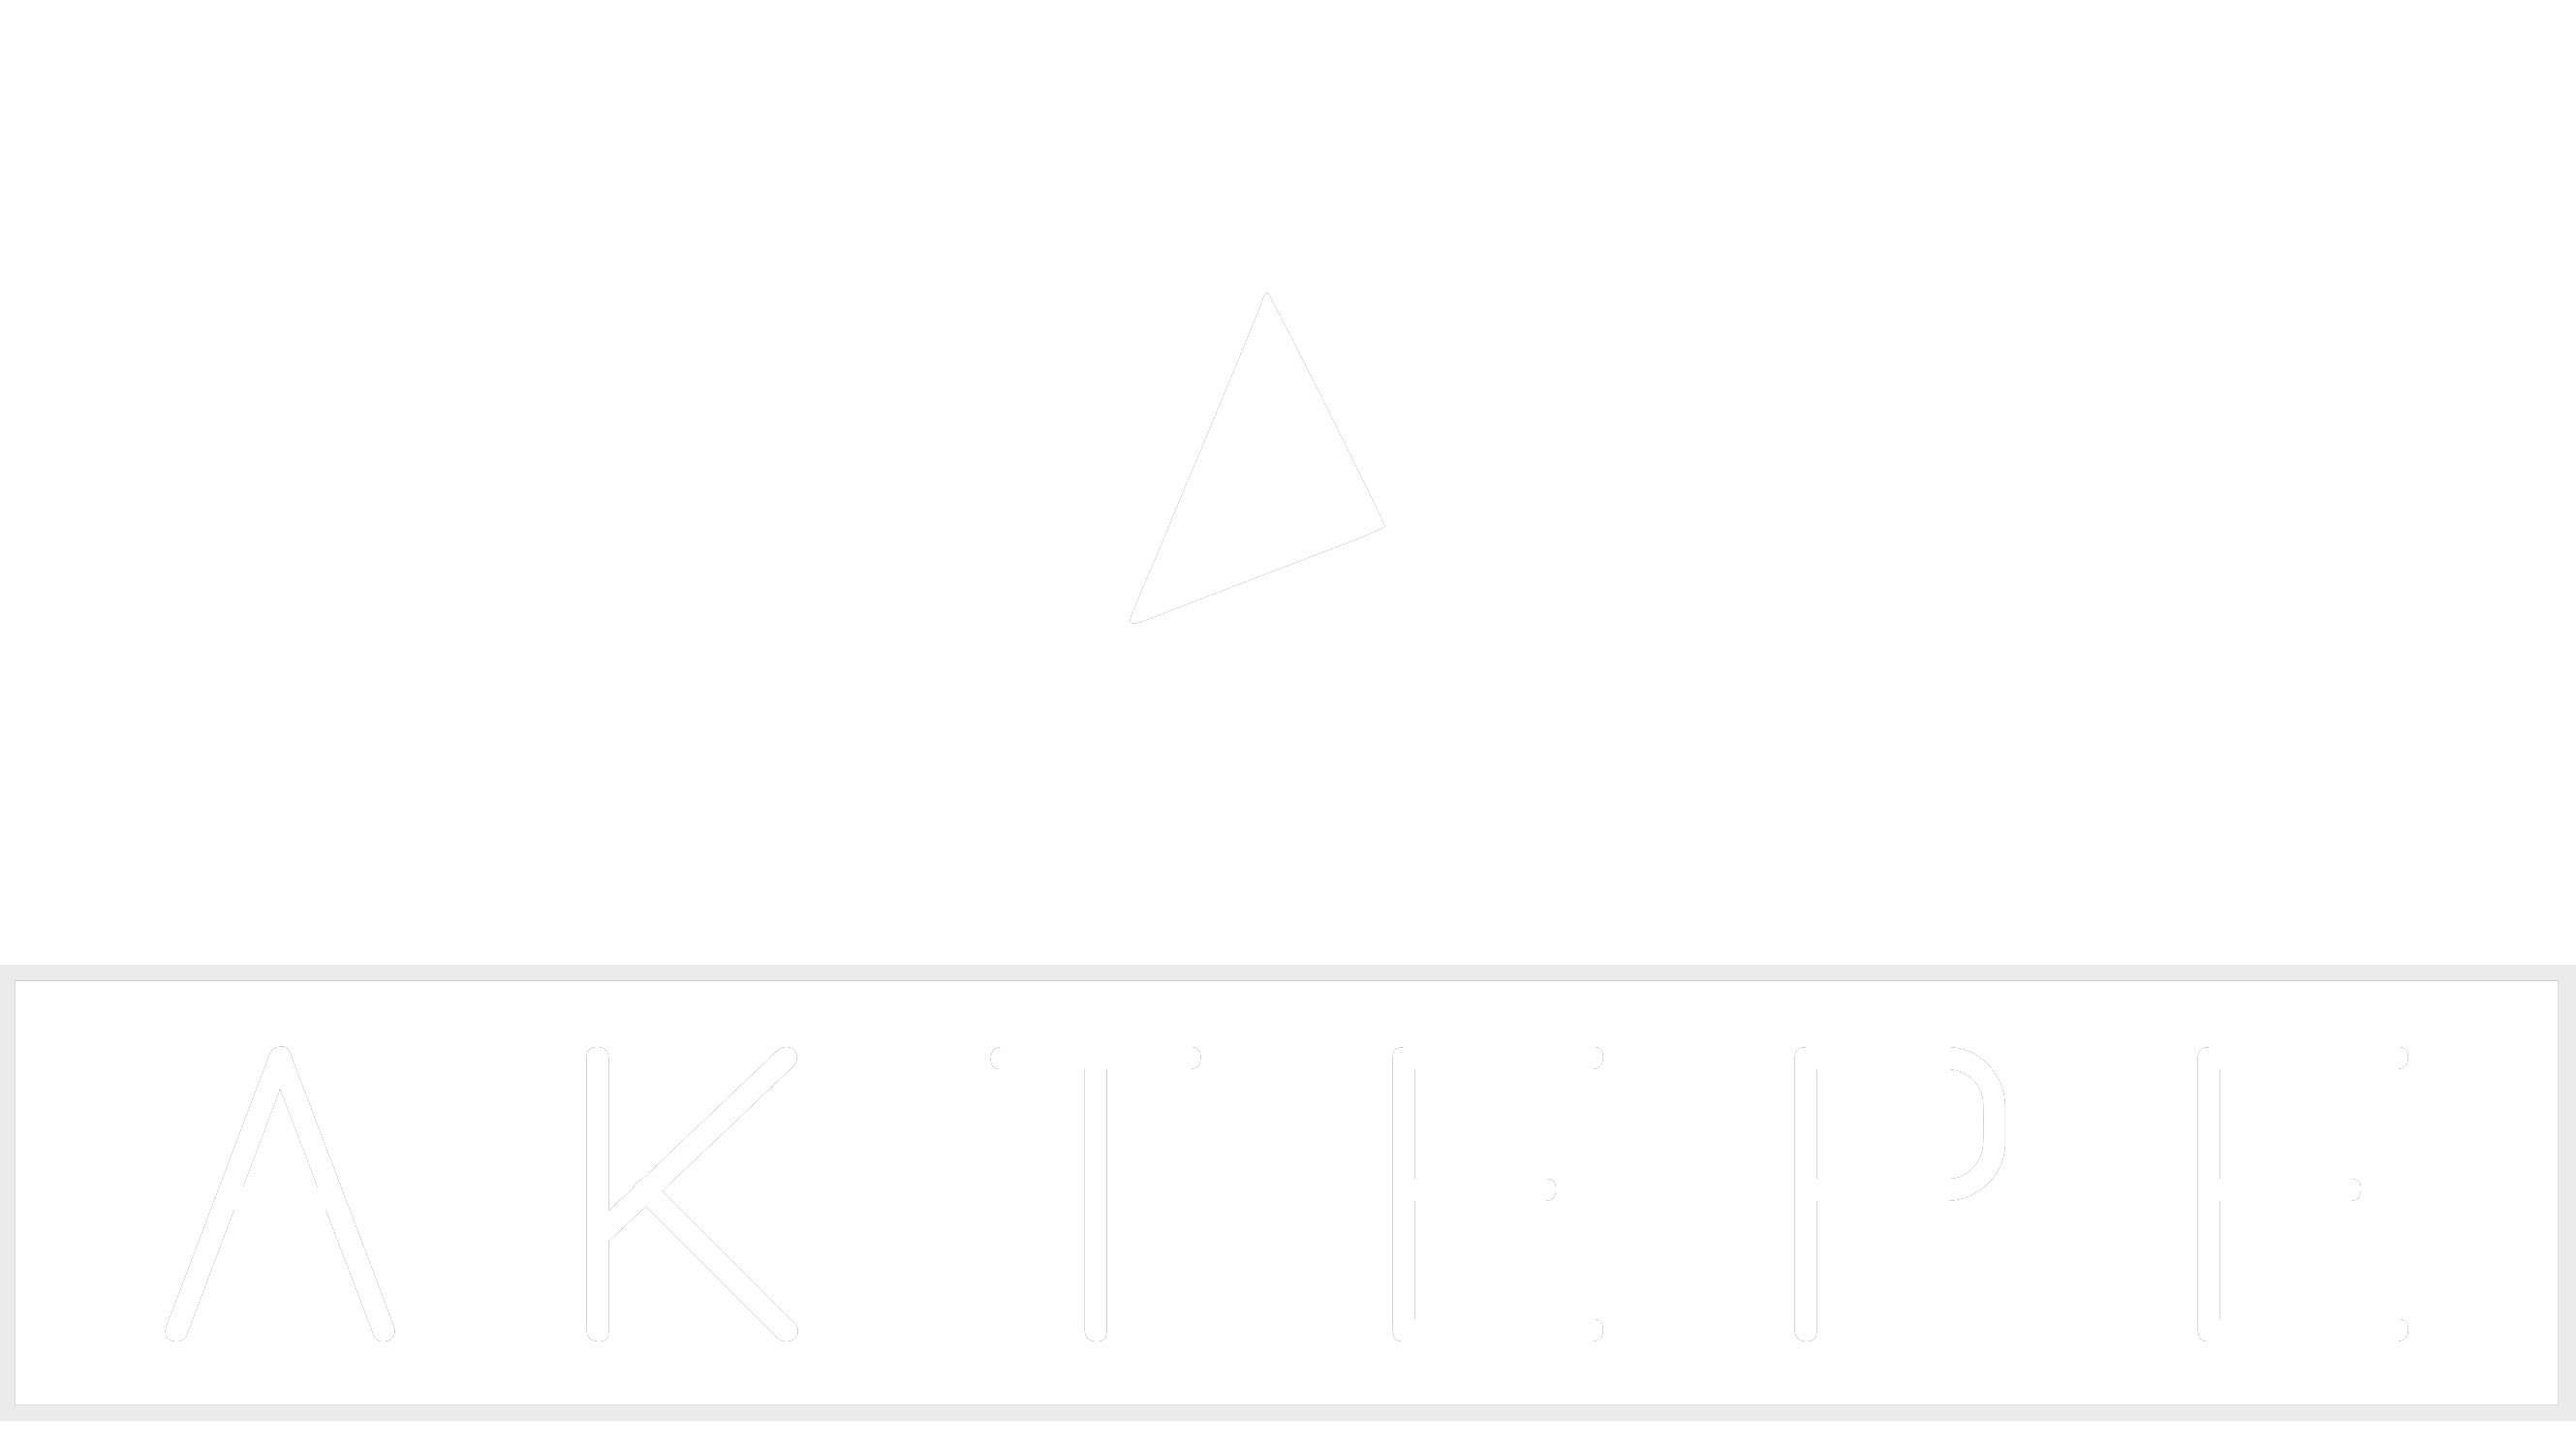 Volkswagen - Aktepe Shop - Oto Müzik Görüntü Navigasyon Sistemleri ve Teyp Çerçevesi Satış Merkezi